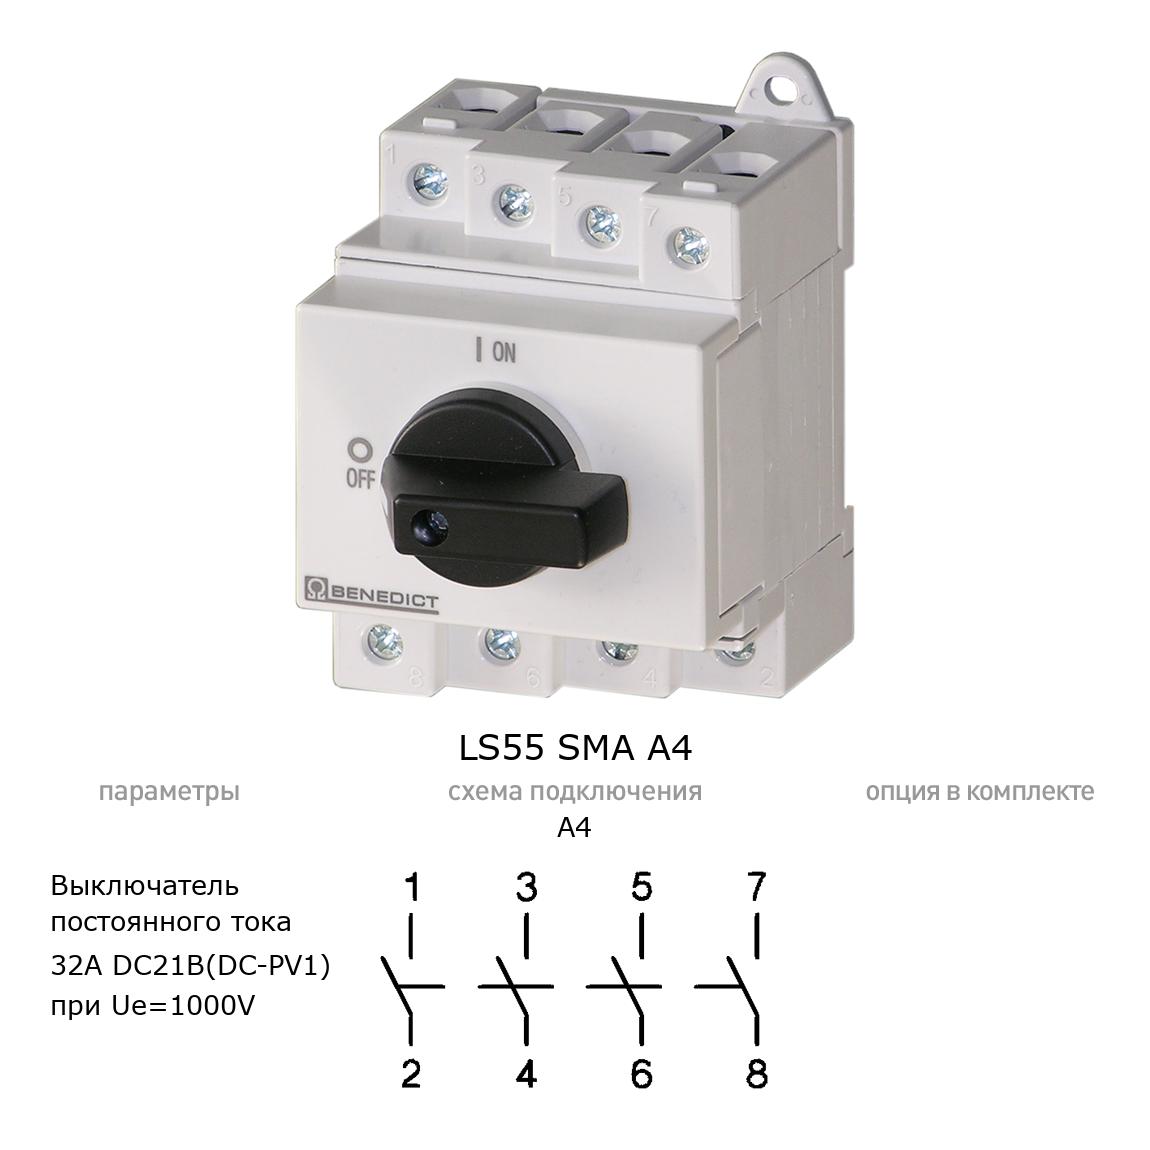 Кулачковый переключатель для постоянного тока (DC) LS55 SMA A4 BENEDICT